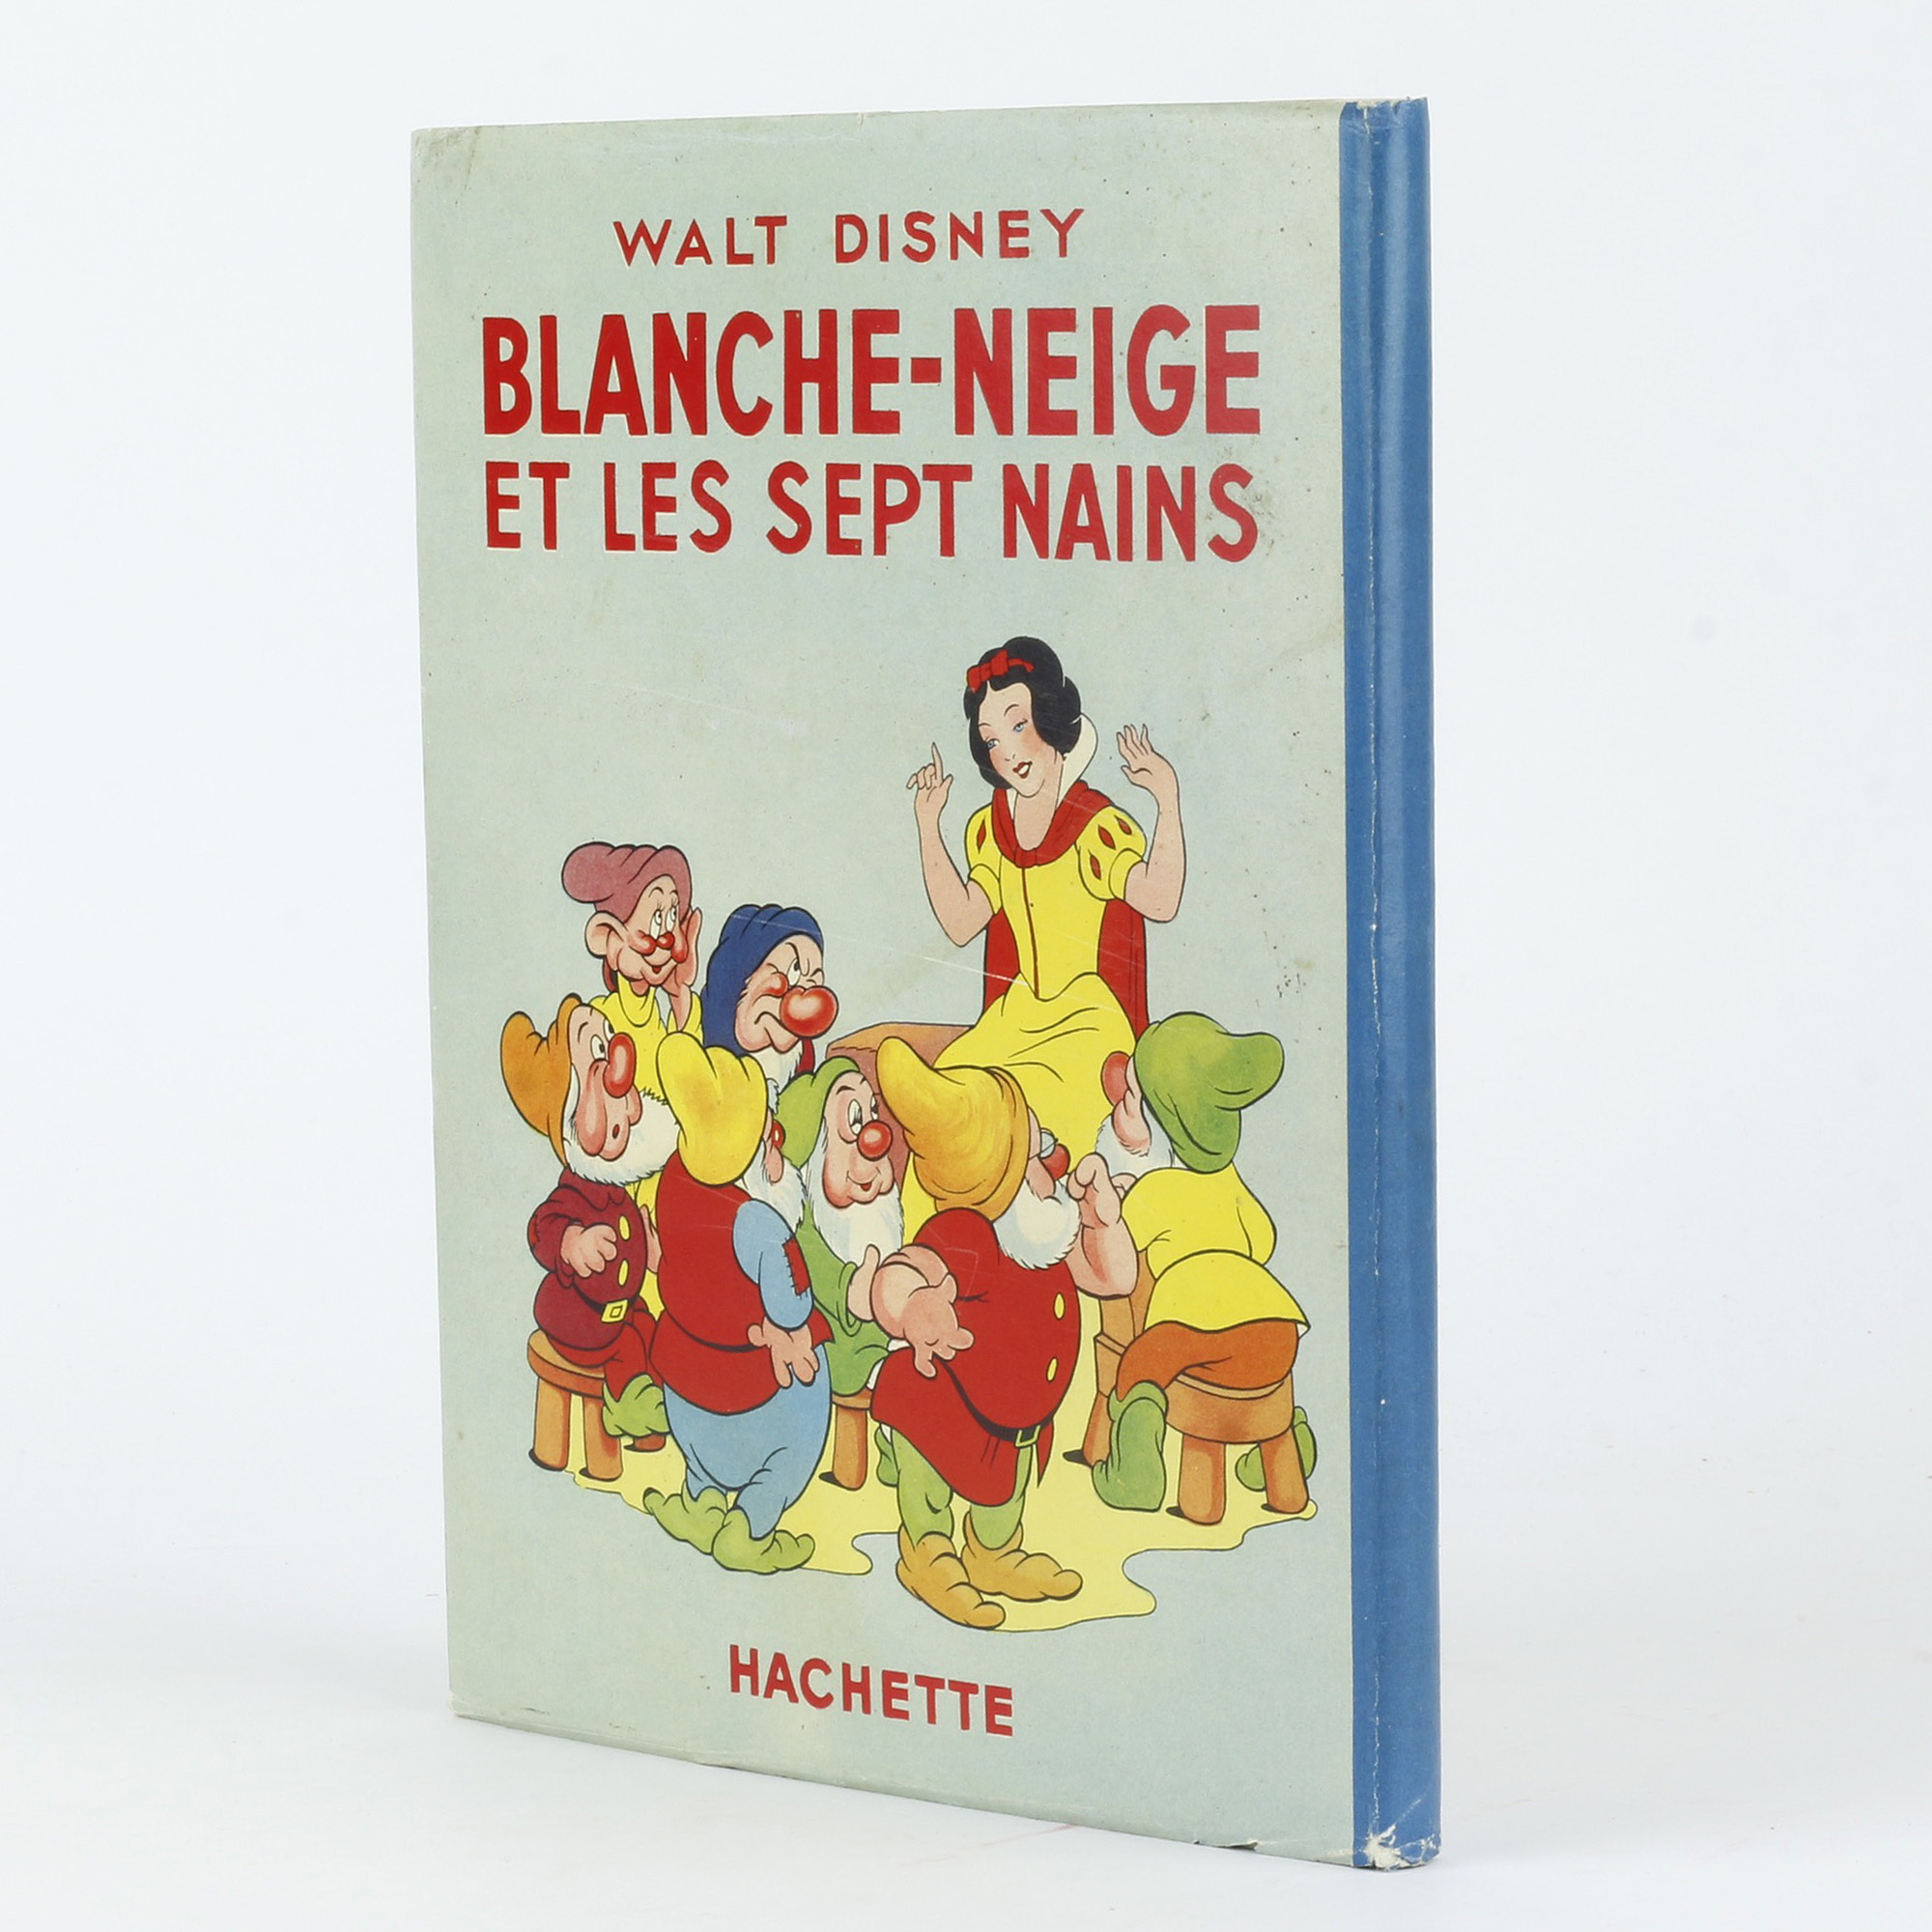 Blanche Neige et les sept nains: Walt Disney Company